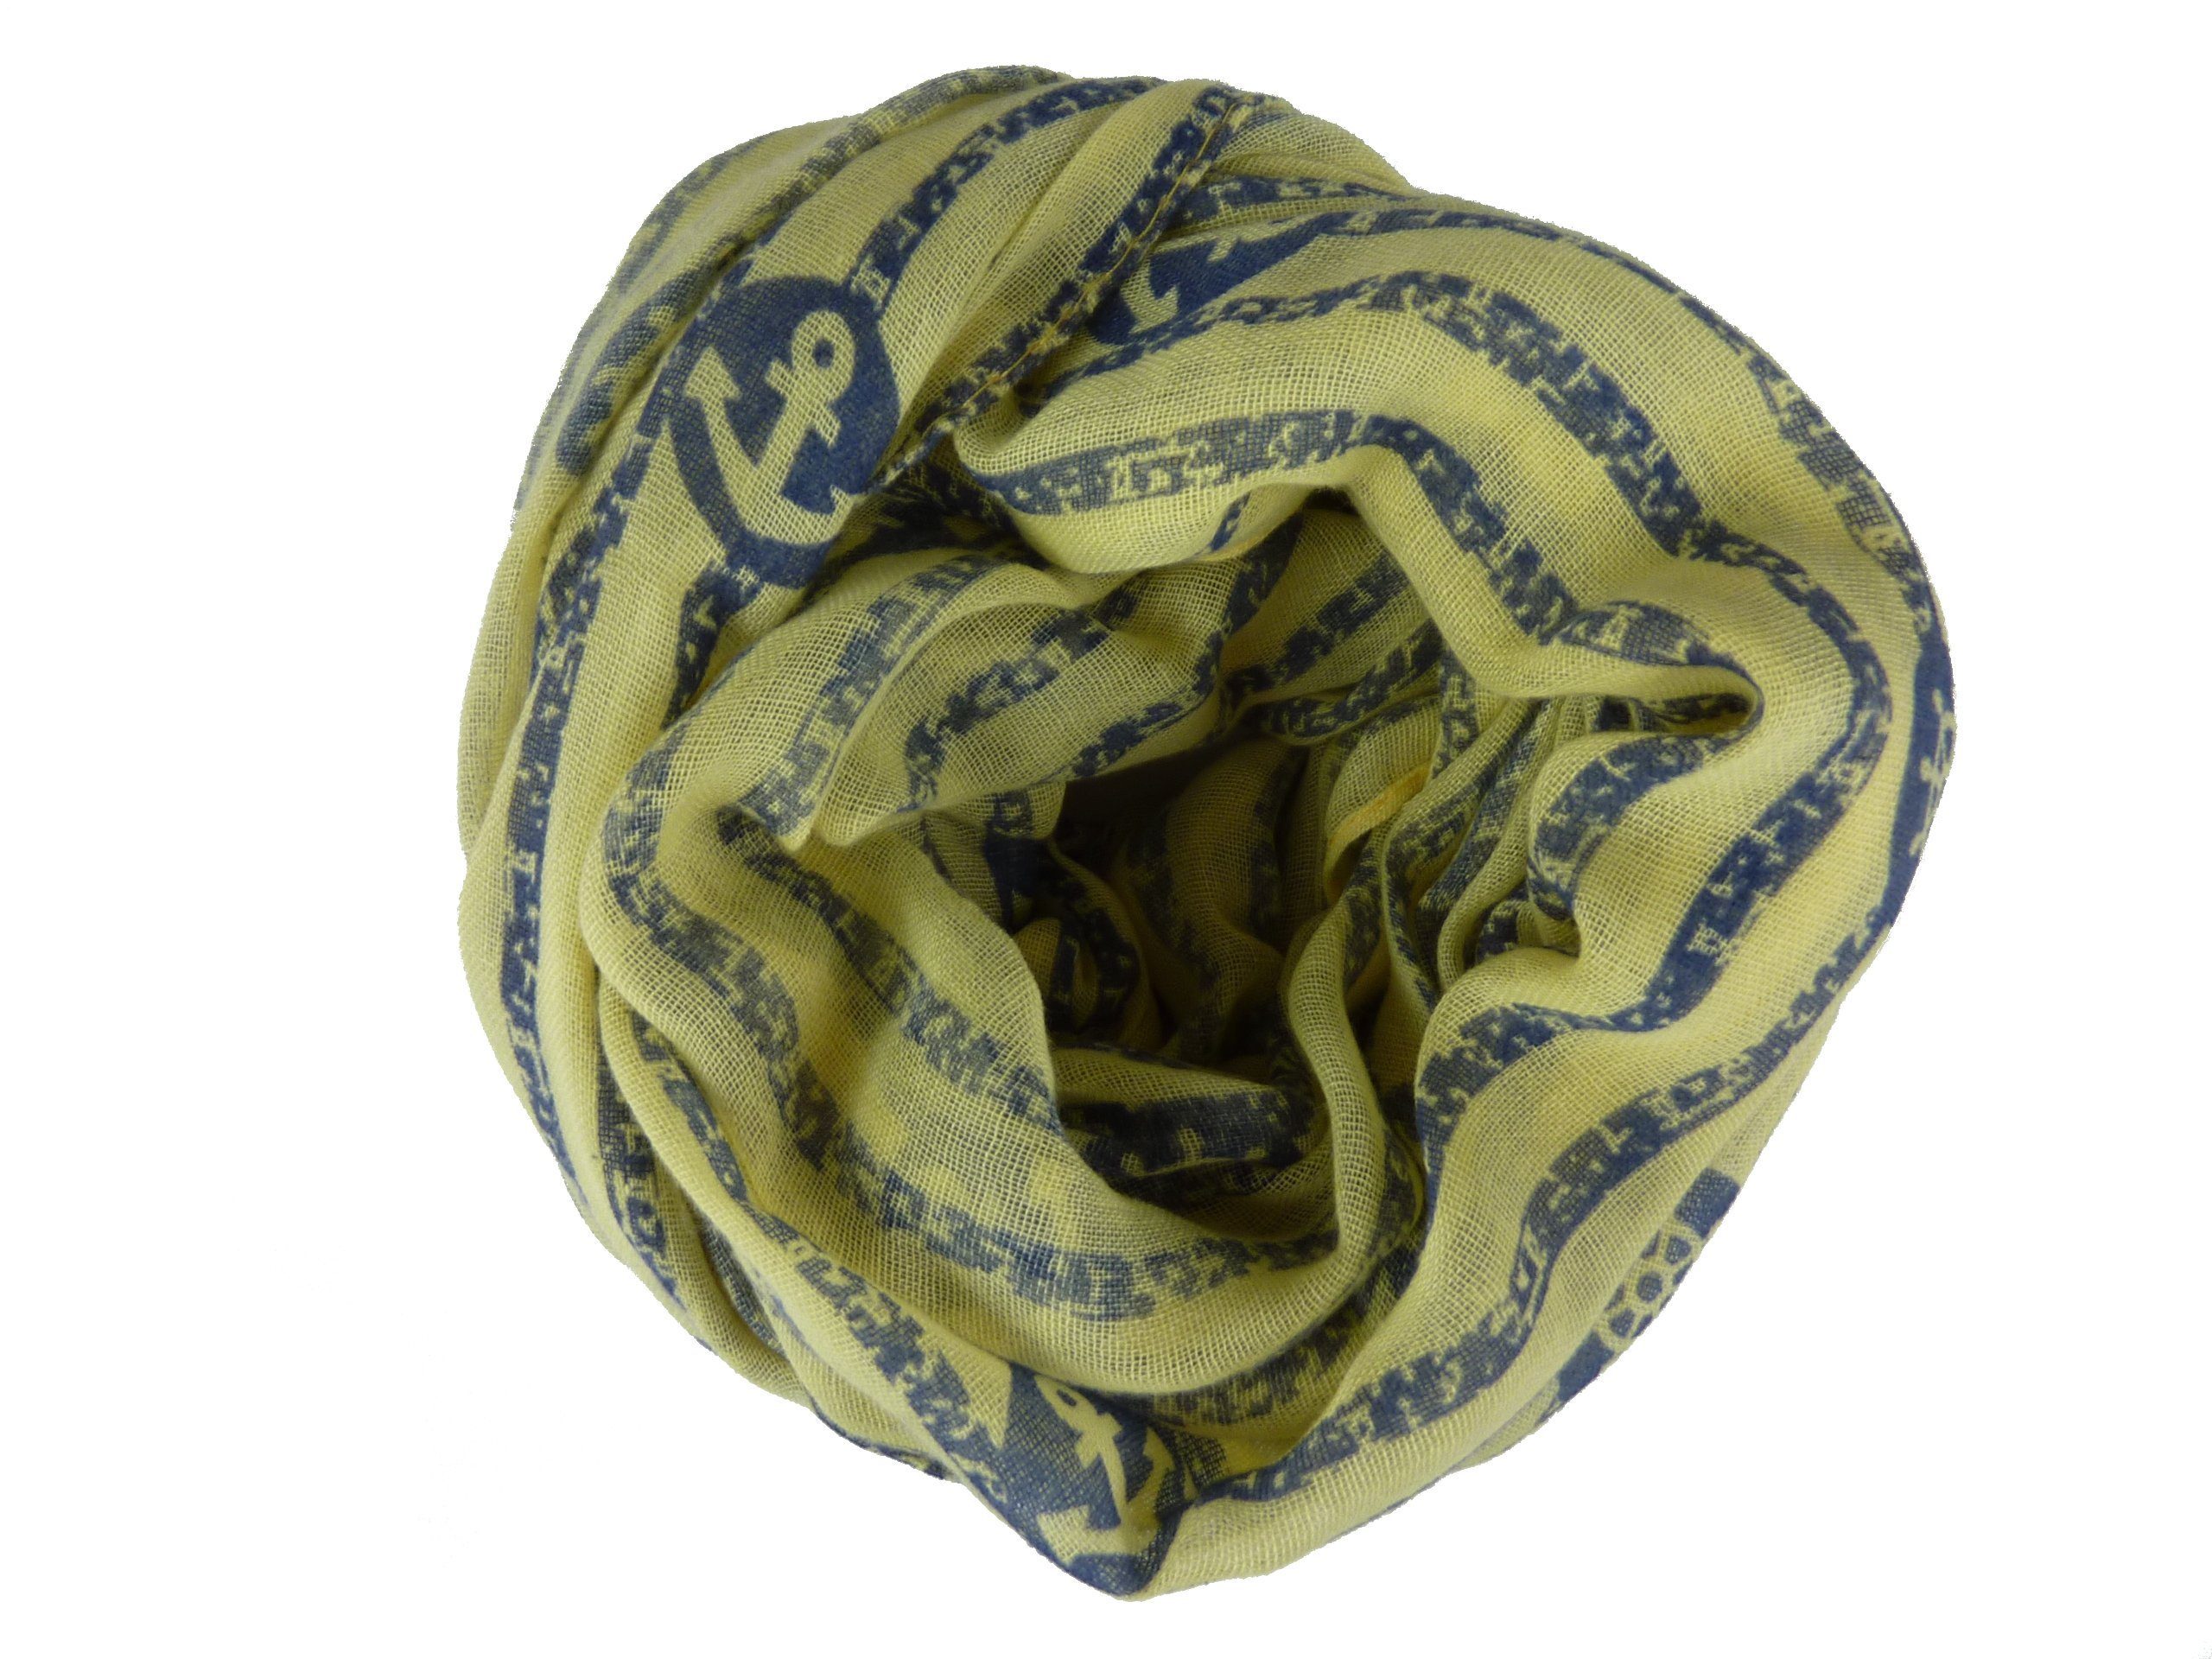 Taschen4life Loop Damen Loop Schal 50% Baumwolle QSWB-52, Anker und Streifen Muster, Schlauchschal gelb/blau